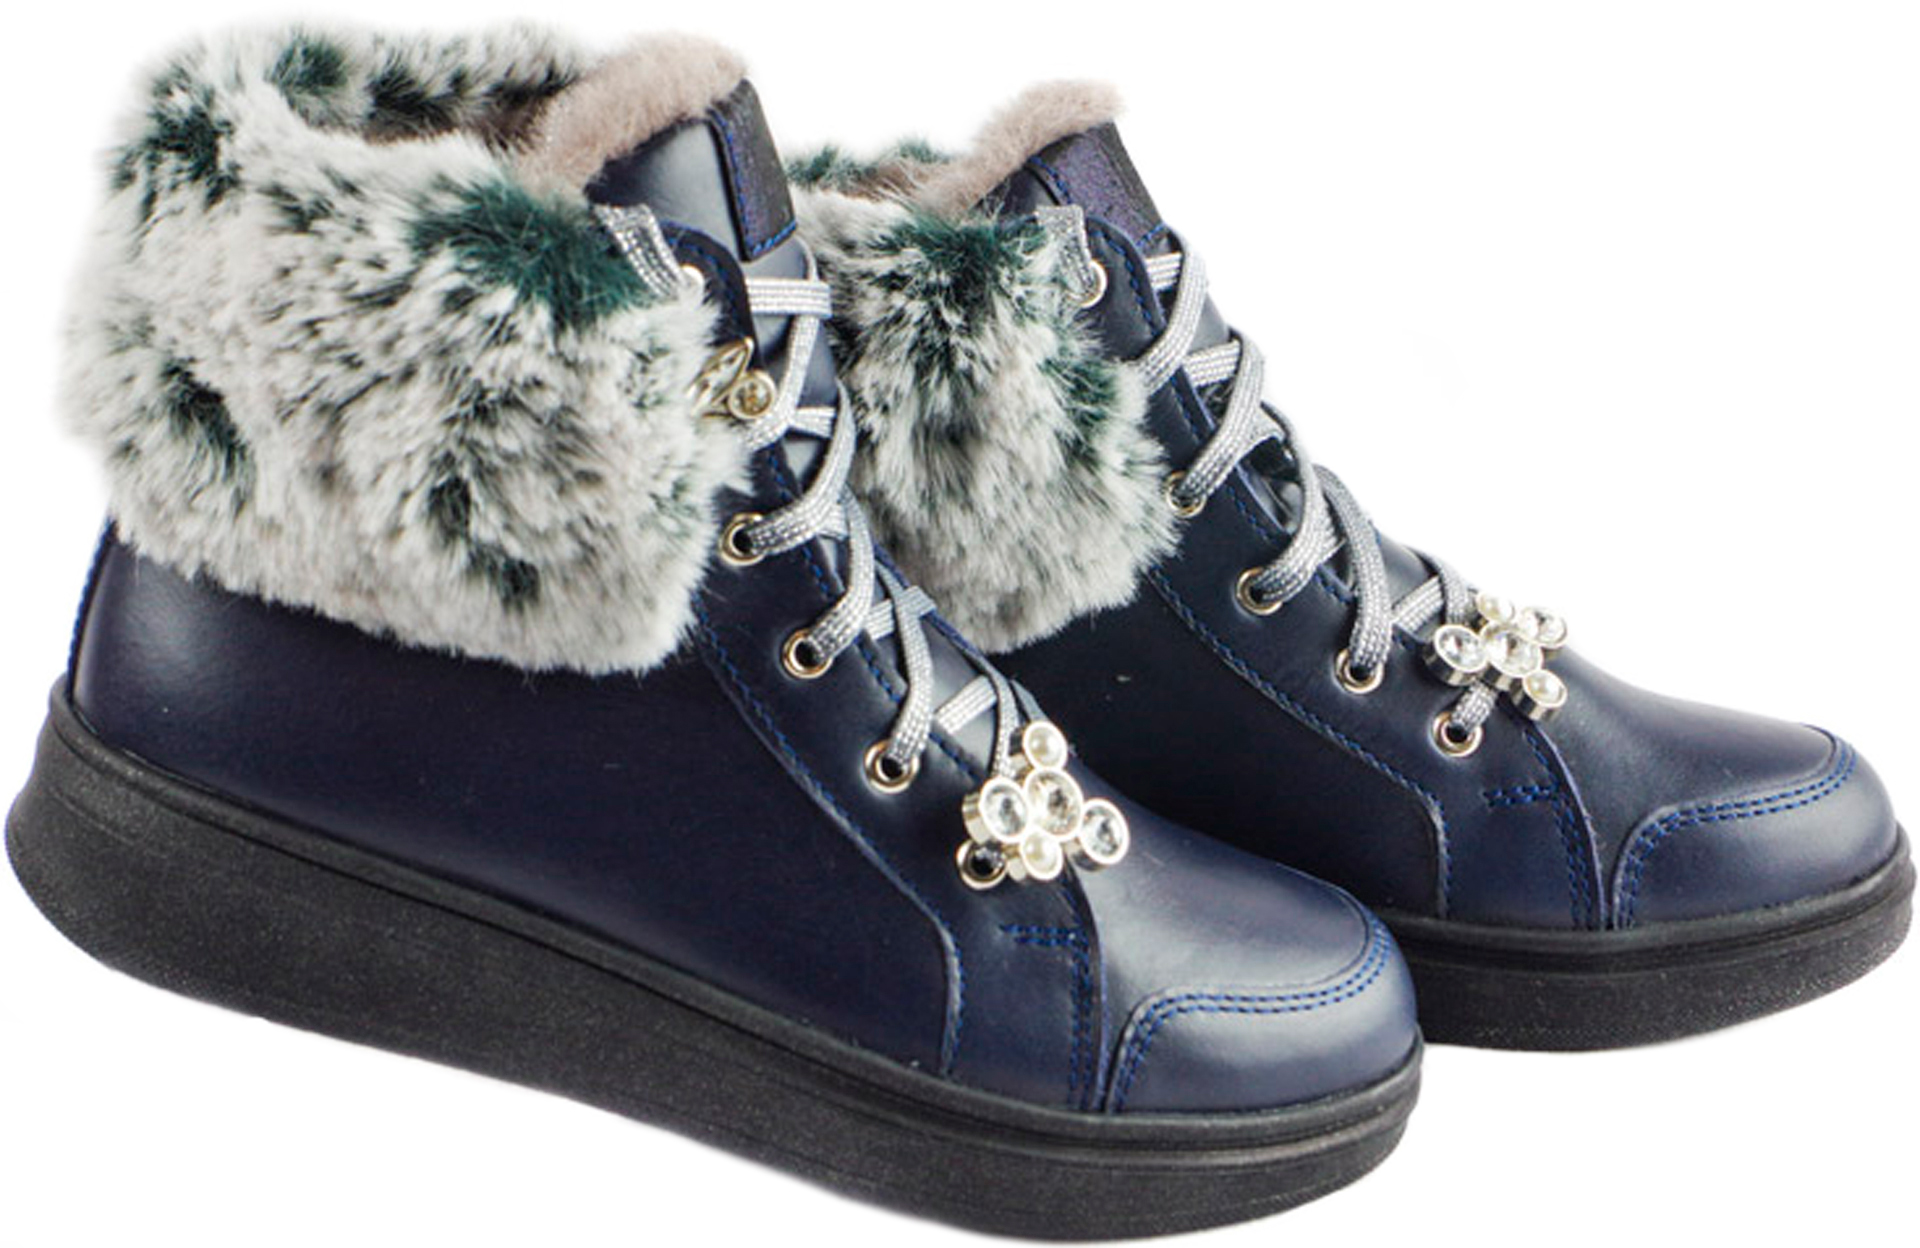 Зимові черевики (1741) для дівчинки, матеріал Натуральна шкіра, Синій колір, 31-40 розміри – Sole Kids. Фото 2